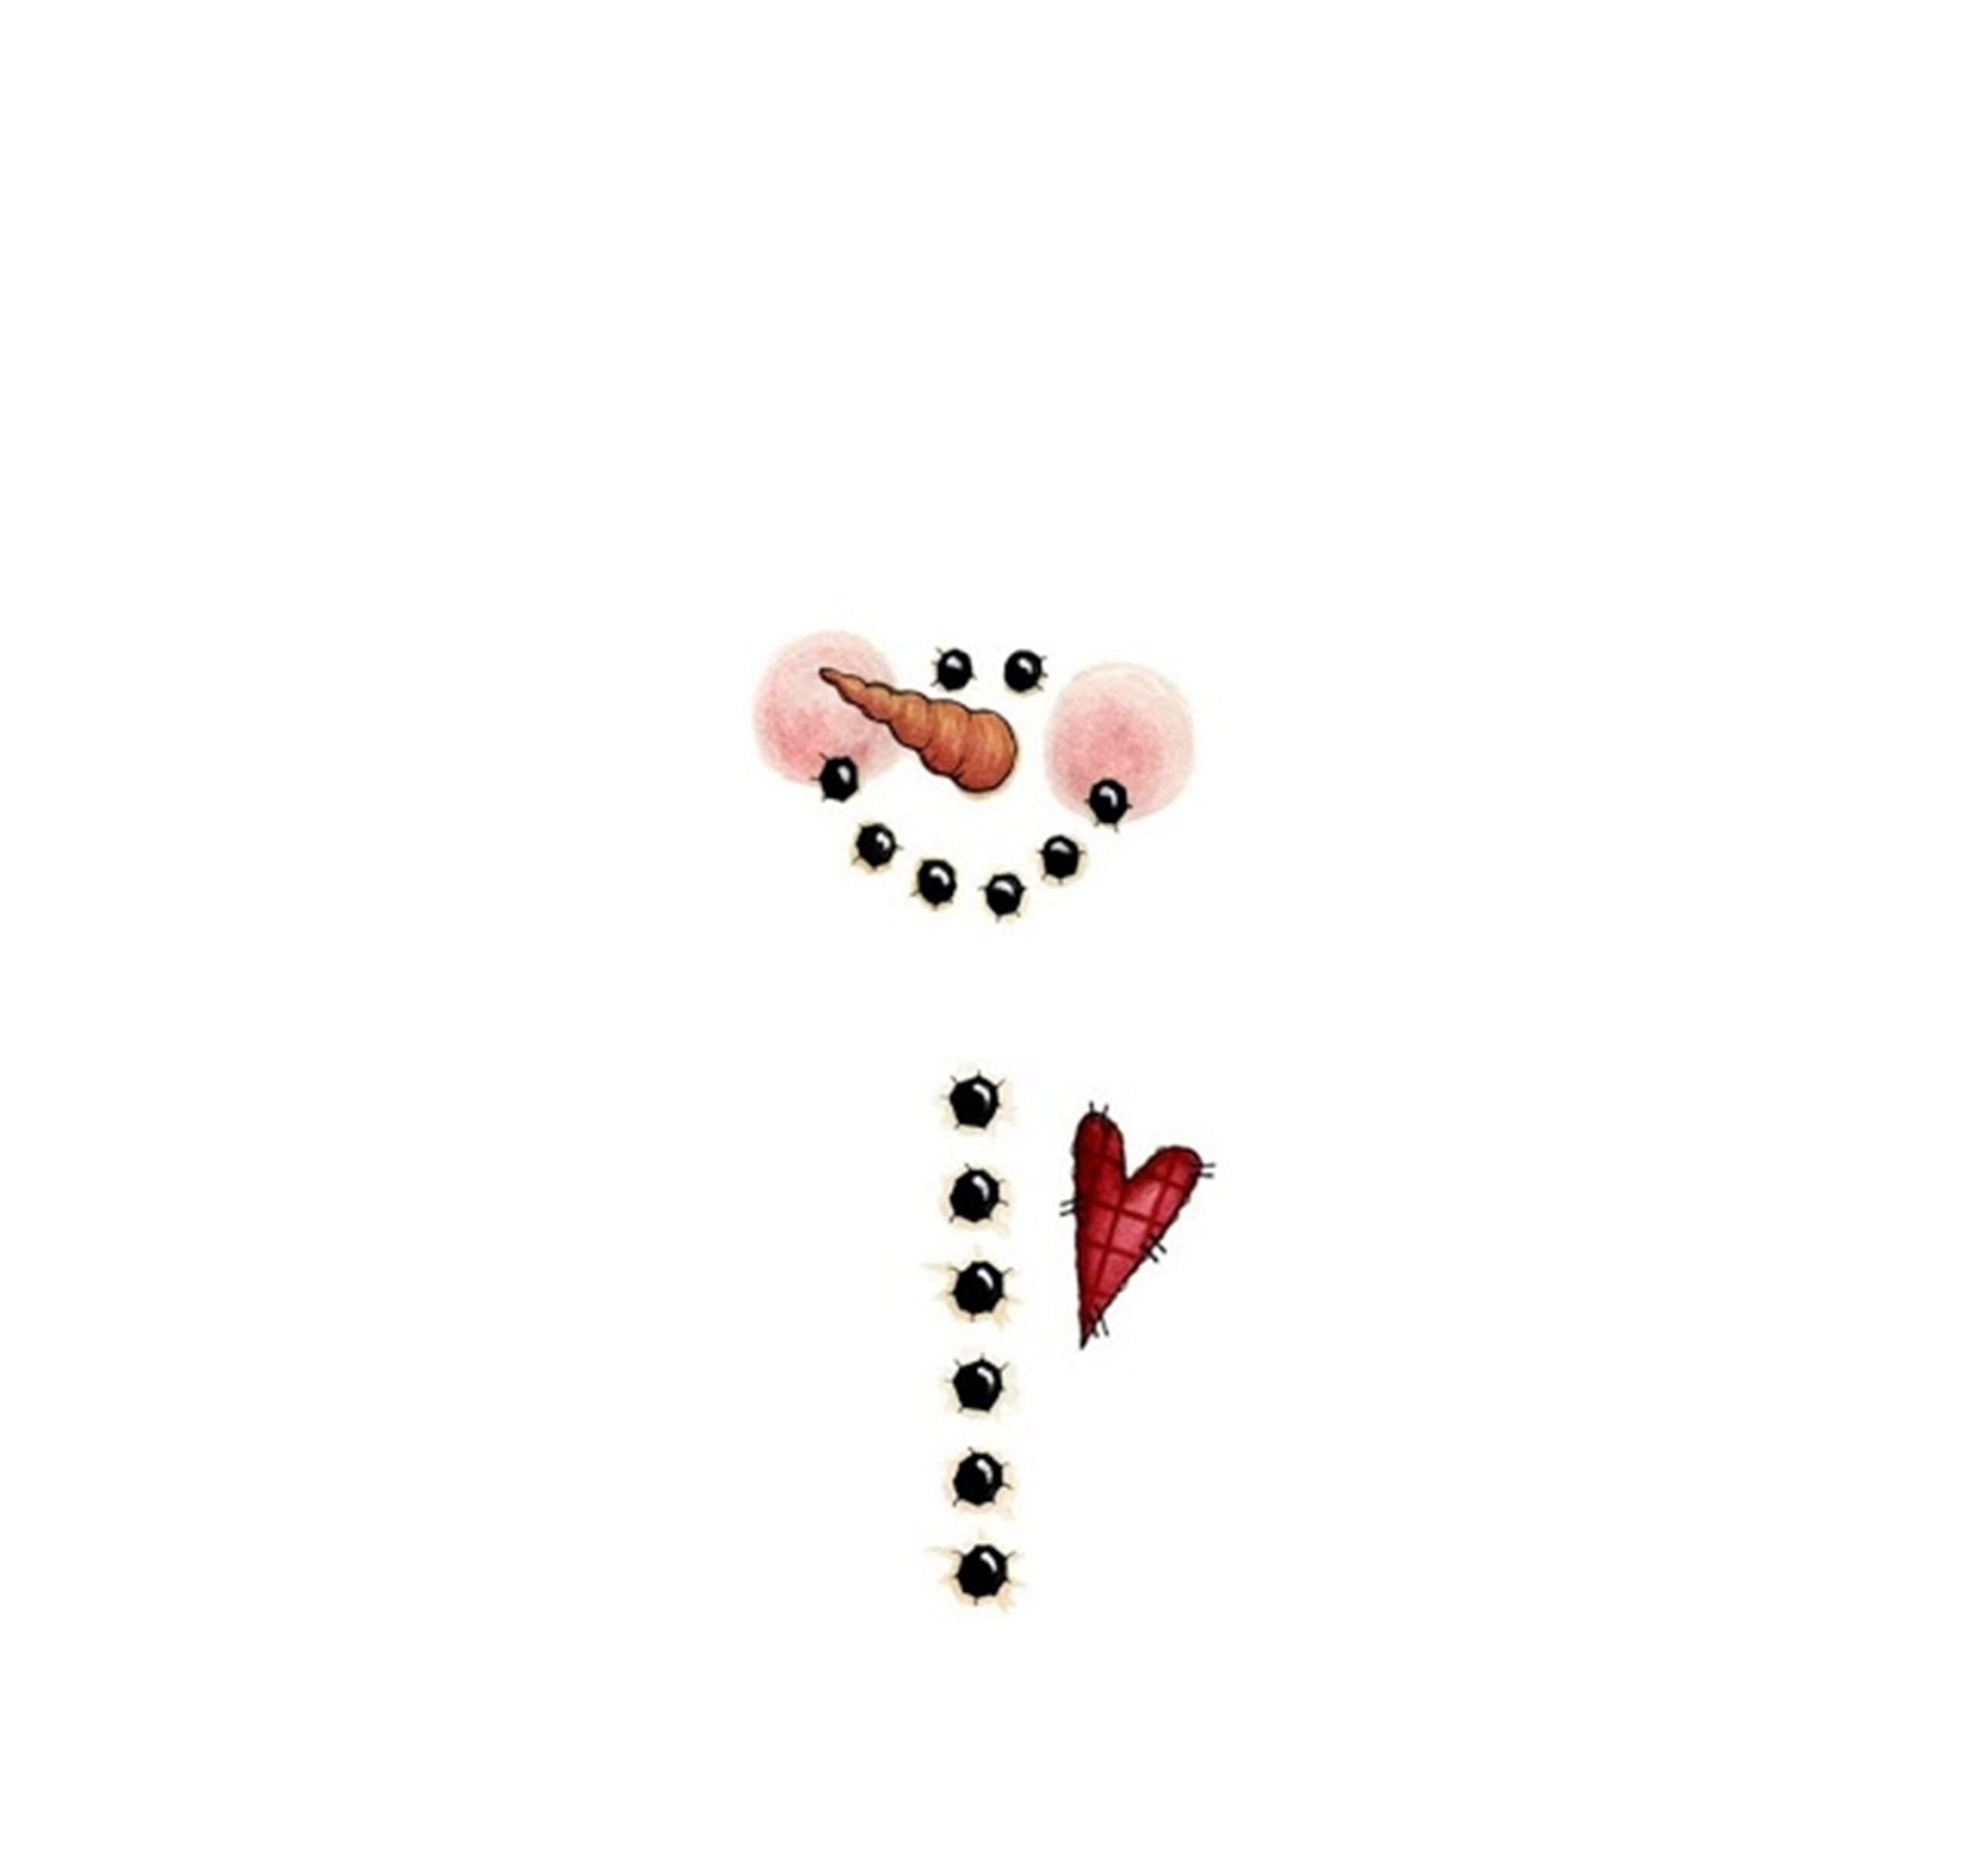 Candy Bar Snowman Printable Printable Snowman Free Christmas Printables Christmas Card Templates Free